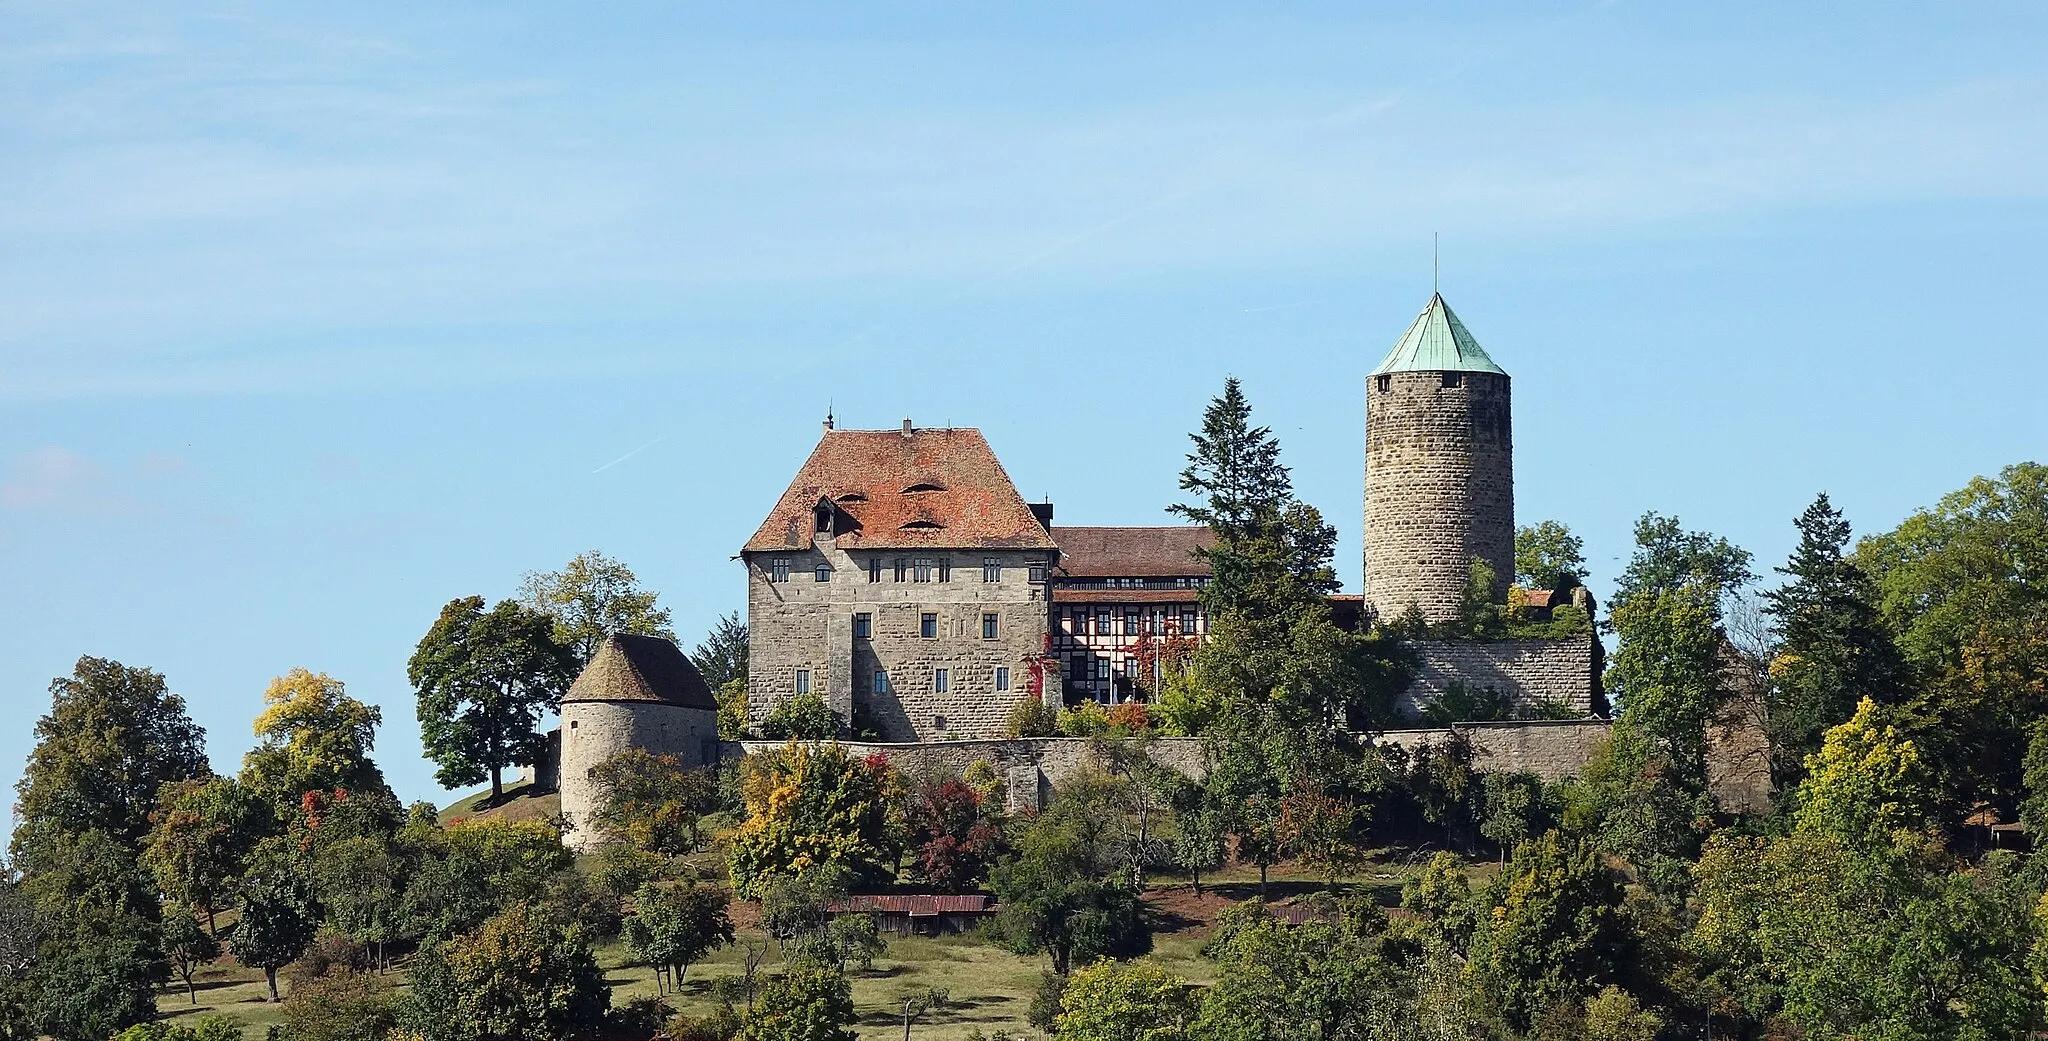 Photo showing: Die Burg Colmberg ist eine Burg auf dem 511 Meter hohen Heuberg im Altmühltal oberhalb von Colmberg in Bayern. Die Burg wurde um das Jahr 770 als kleine Palisadenburg mit hölzernem Turm errichtet und zwischen den Jahren 1150 und 1240 ausgebaut. Im Jahre 1964 ging die Burg in den Besitz der Familie Unbehauen aus Colmberg über, die auf der Burg ein Hotel mit Restaurant betreiben.